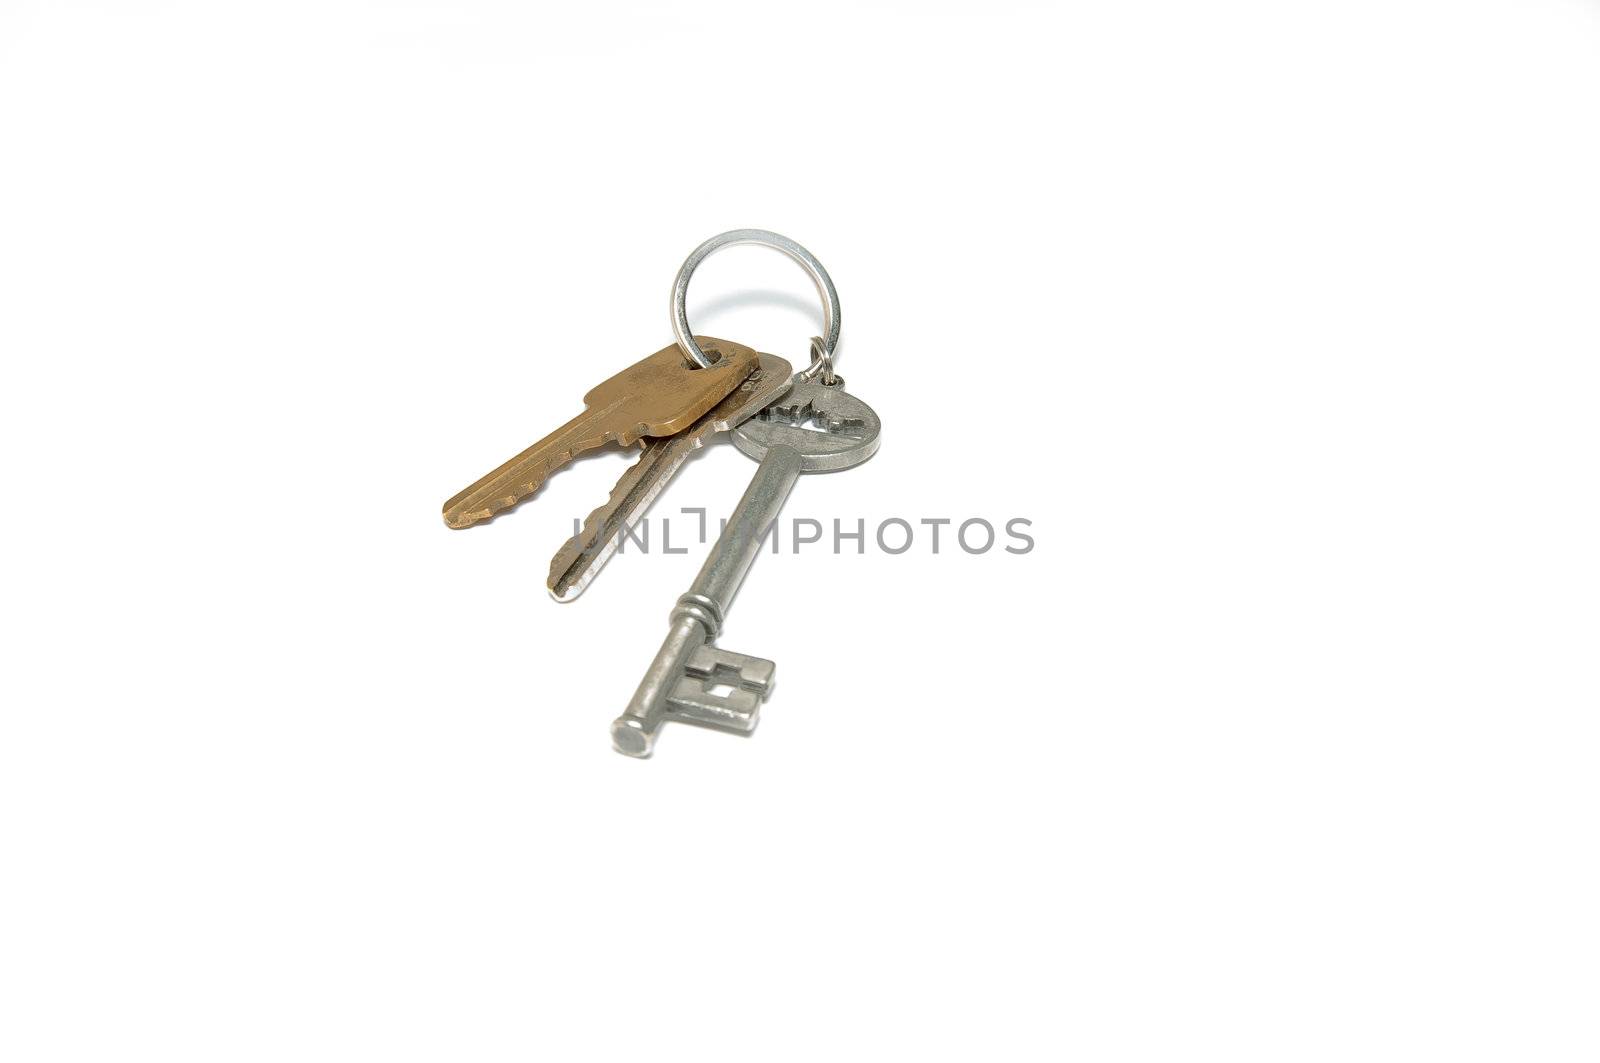 3 house keys all together